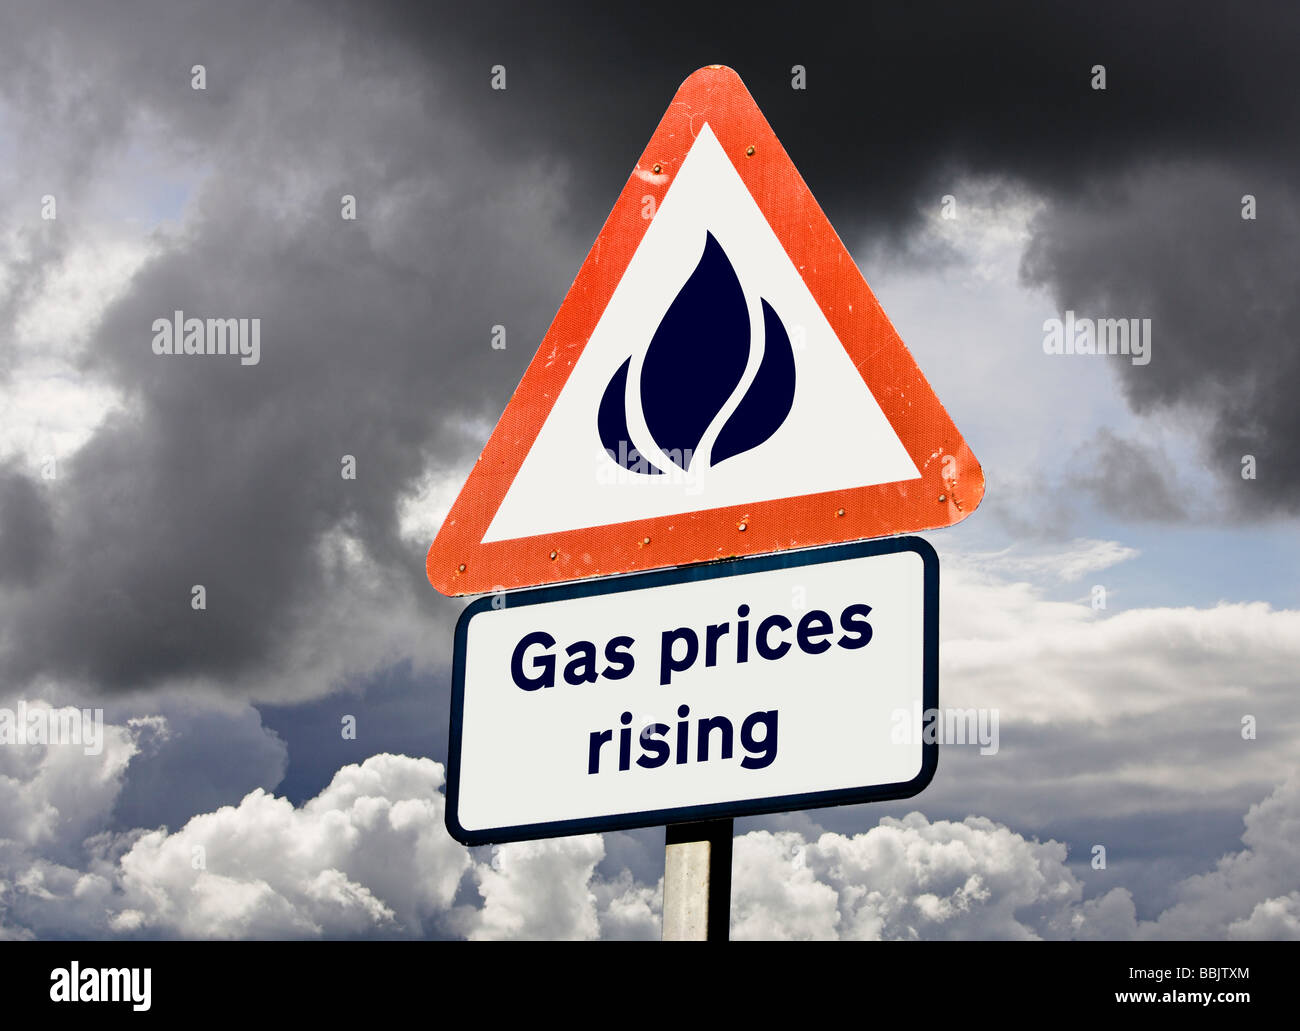 Gas prezzi energetici, bollette, rising - inflazione o il concetto di IVA Foto Stock